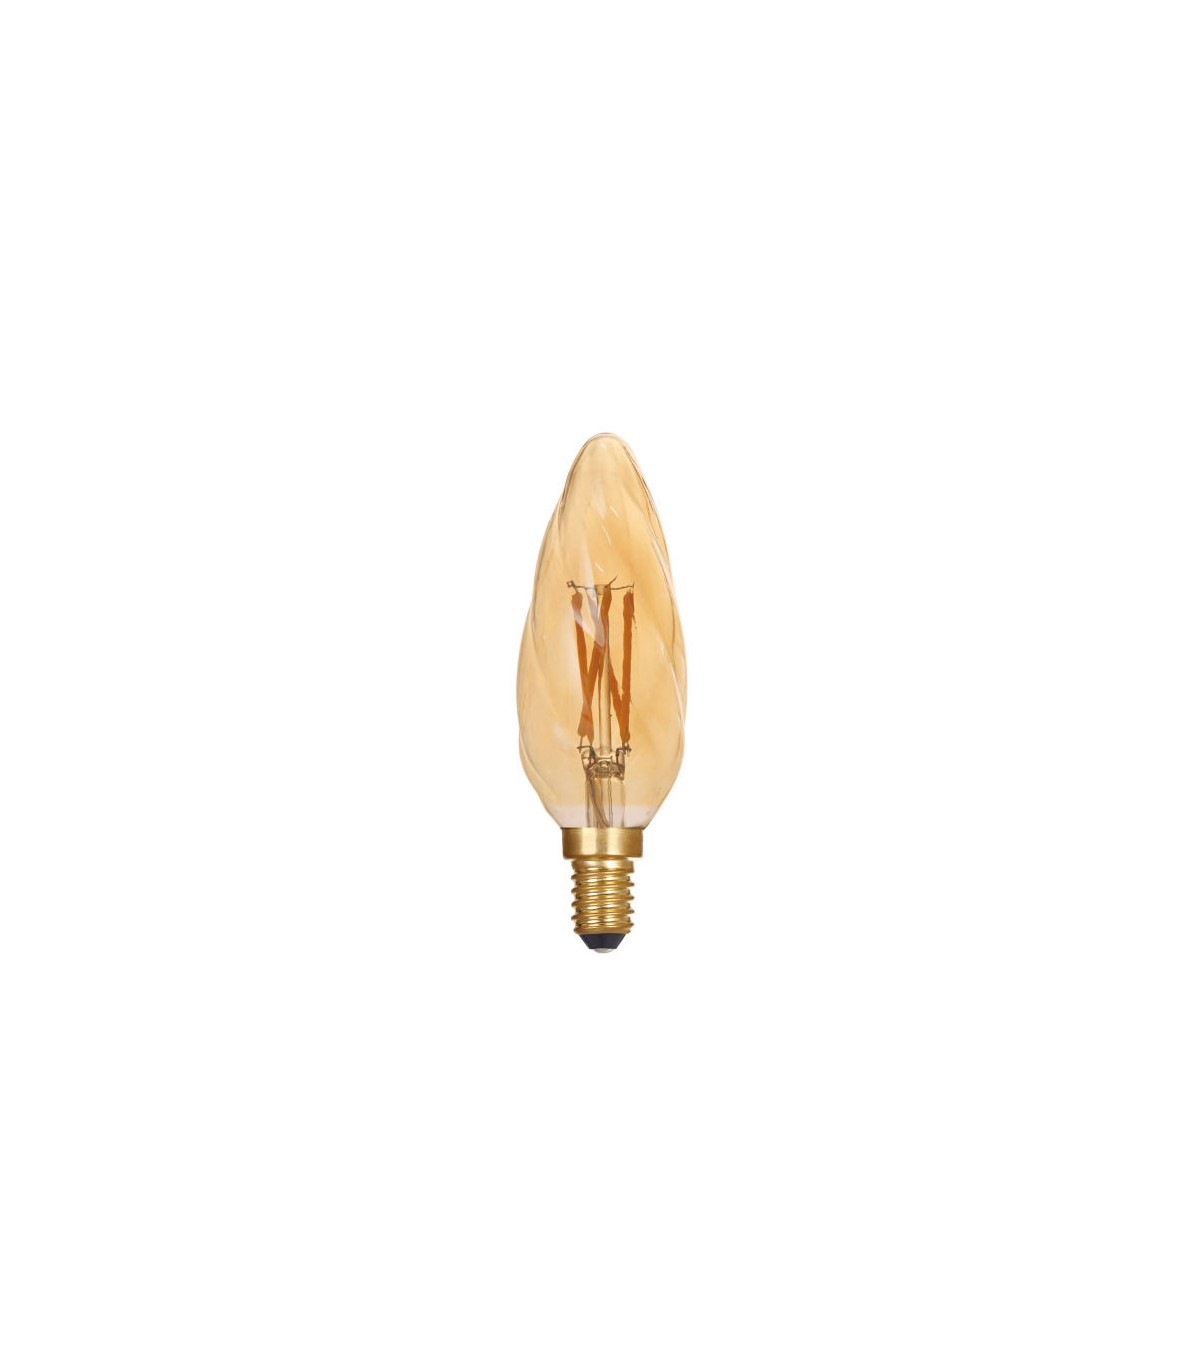 ARIC 20121  Ampoule LED C35 décorative Flamme torsadée ambrée E14 4,1W  variable - Blanc Chaud